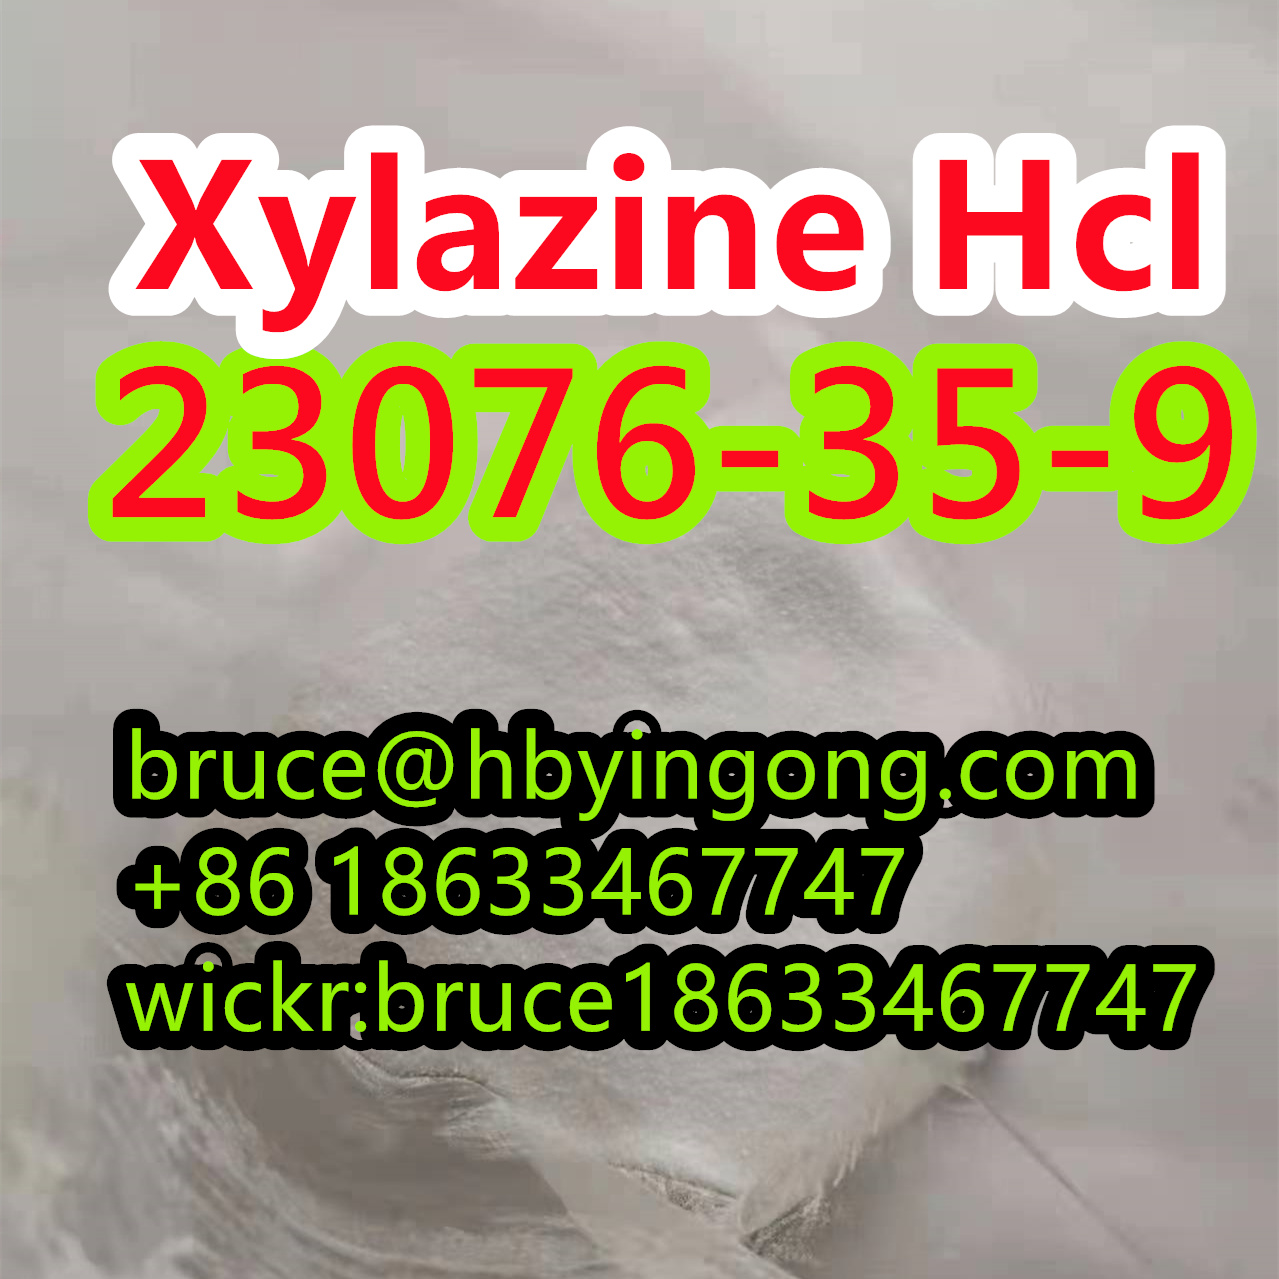 CAS 23076-35-9 Xylazine Hcl CAS 7361-61-7 Xylazine powder รูปที่ 1